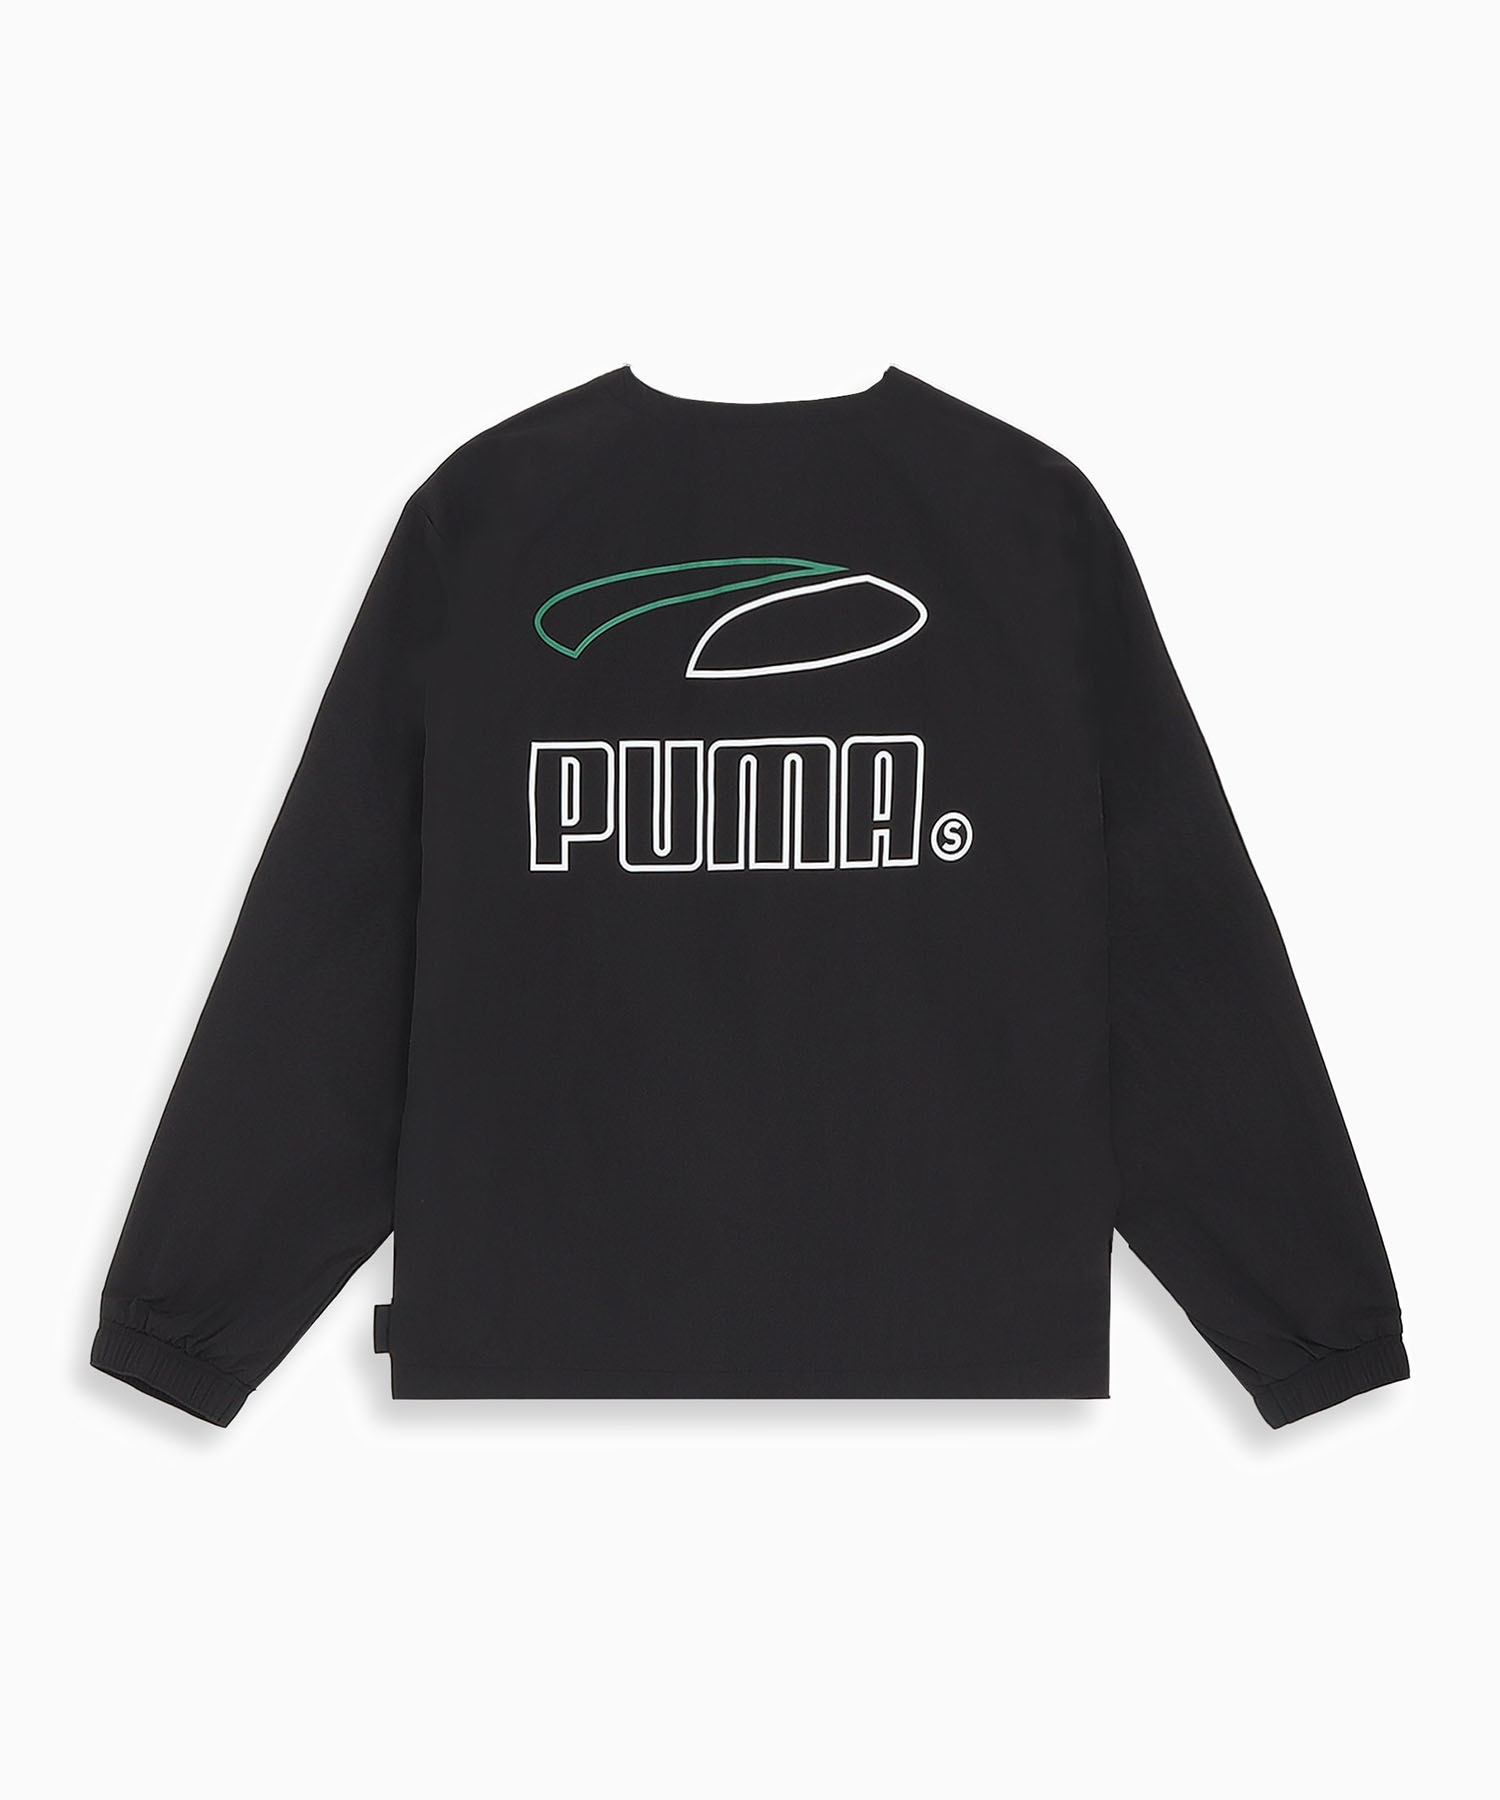 【マトメガイ対象】PUMA プーマ スケートボーディング メンズ ウーブンシャツ スケートボード 625690(01-M)